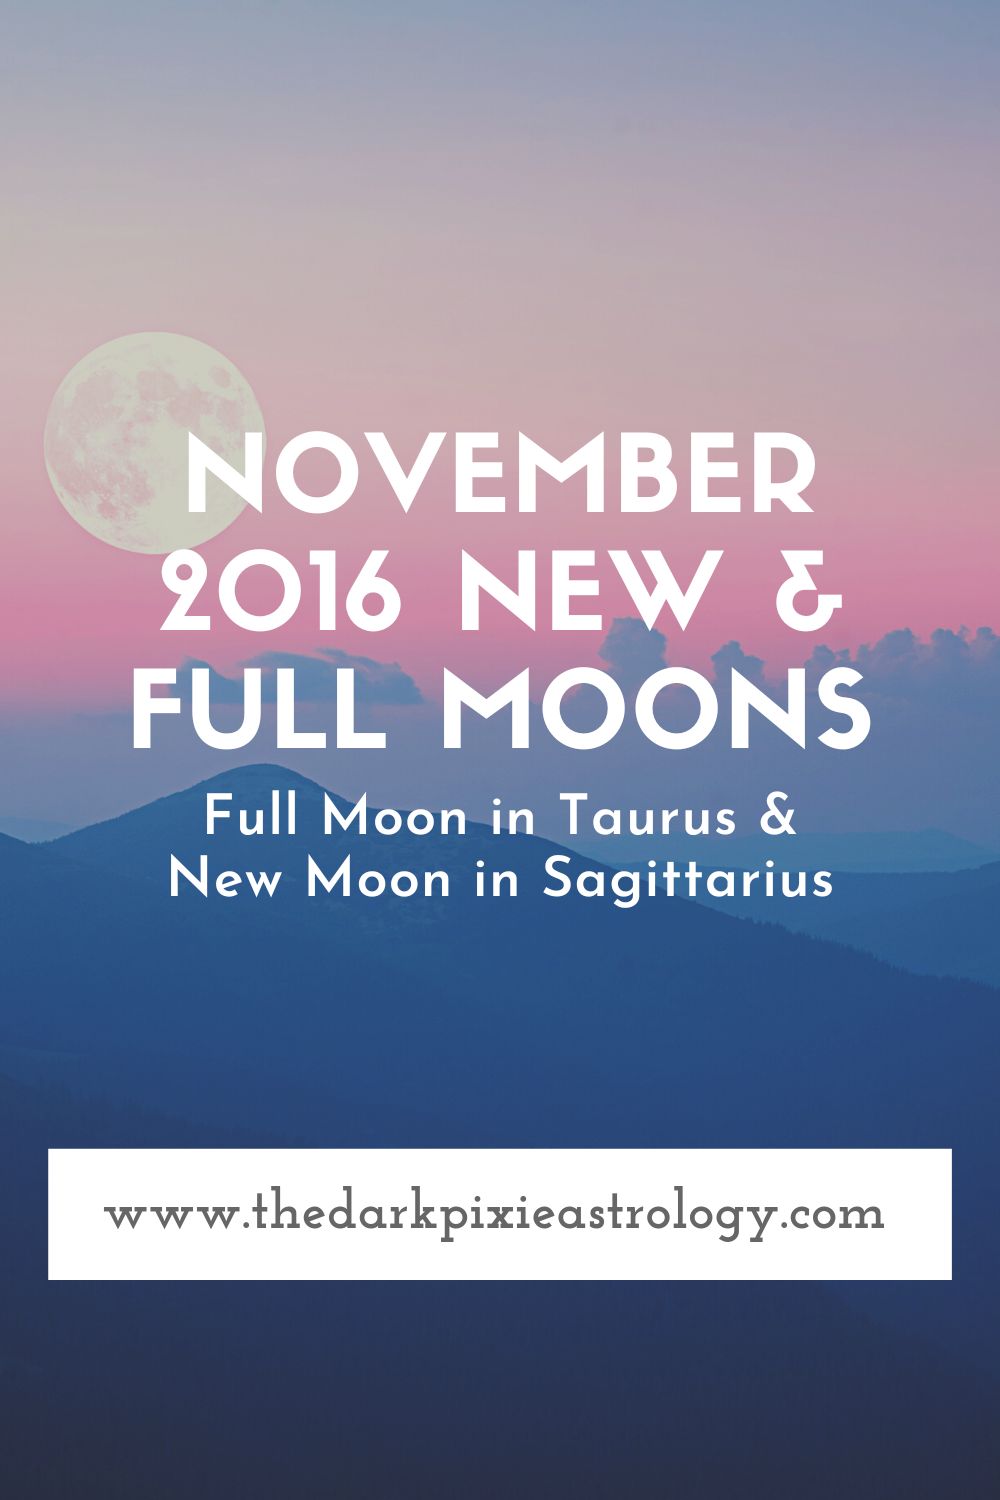 November 2016 New & Full Moons - The Dark Pixie Astrology